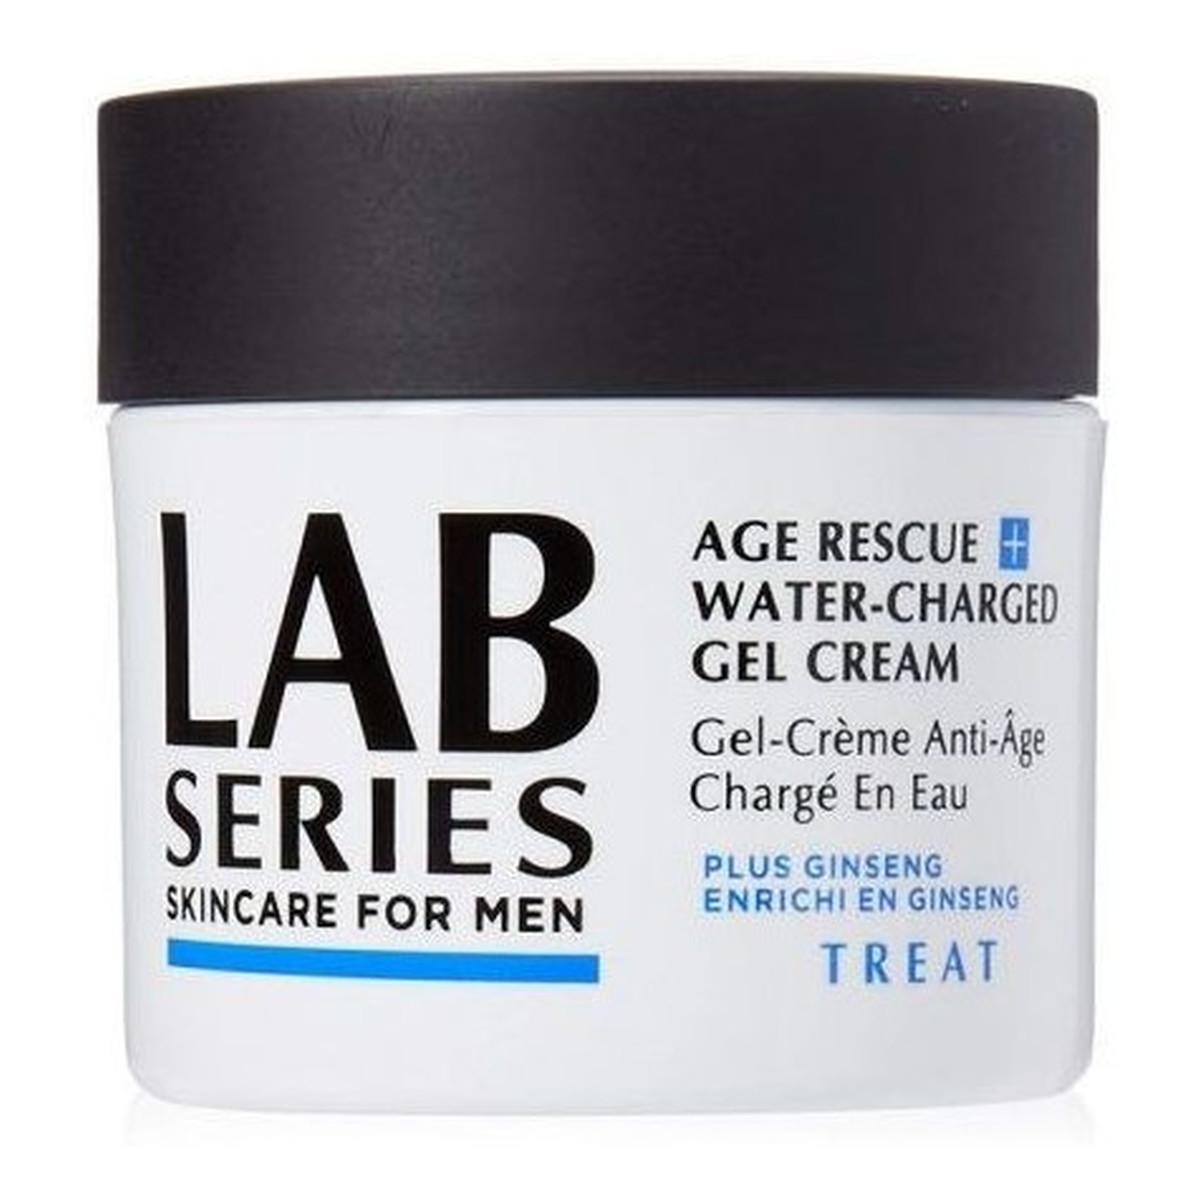 Lab Series Skincare For Men kremowy żel przeciwzmarszczkowy dla mężczyzn 97ml